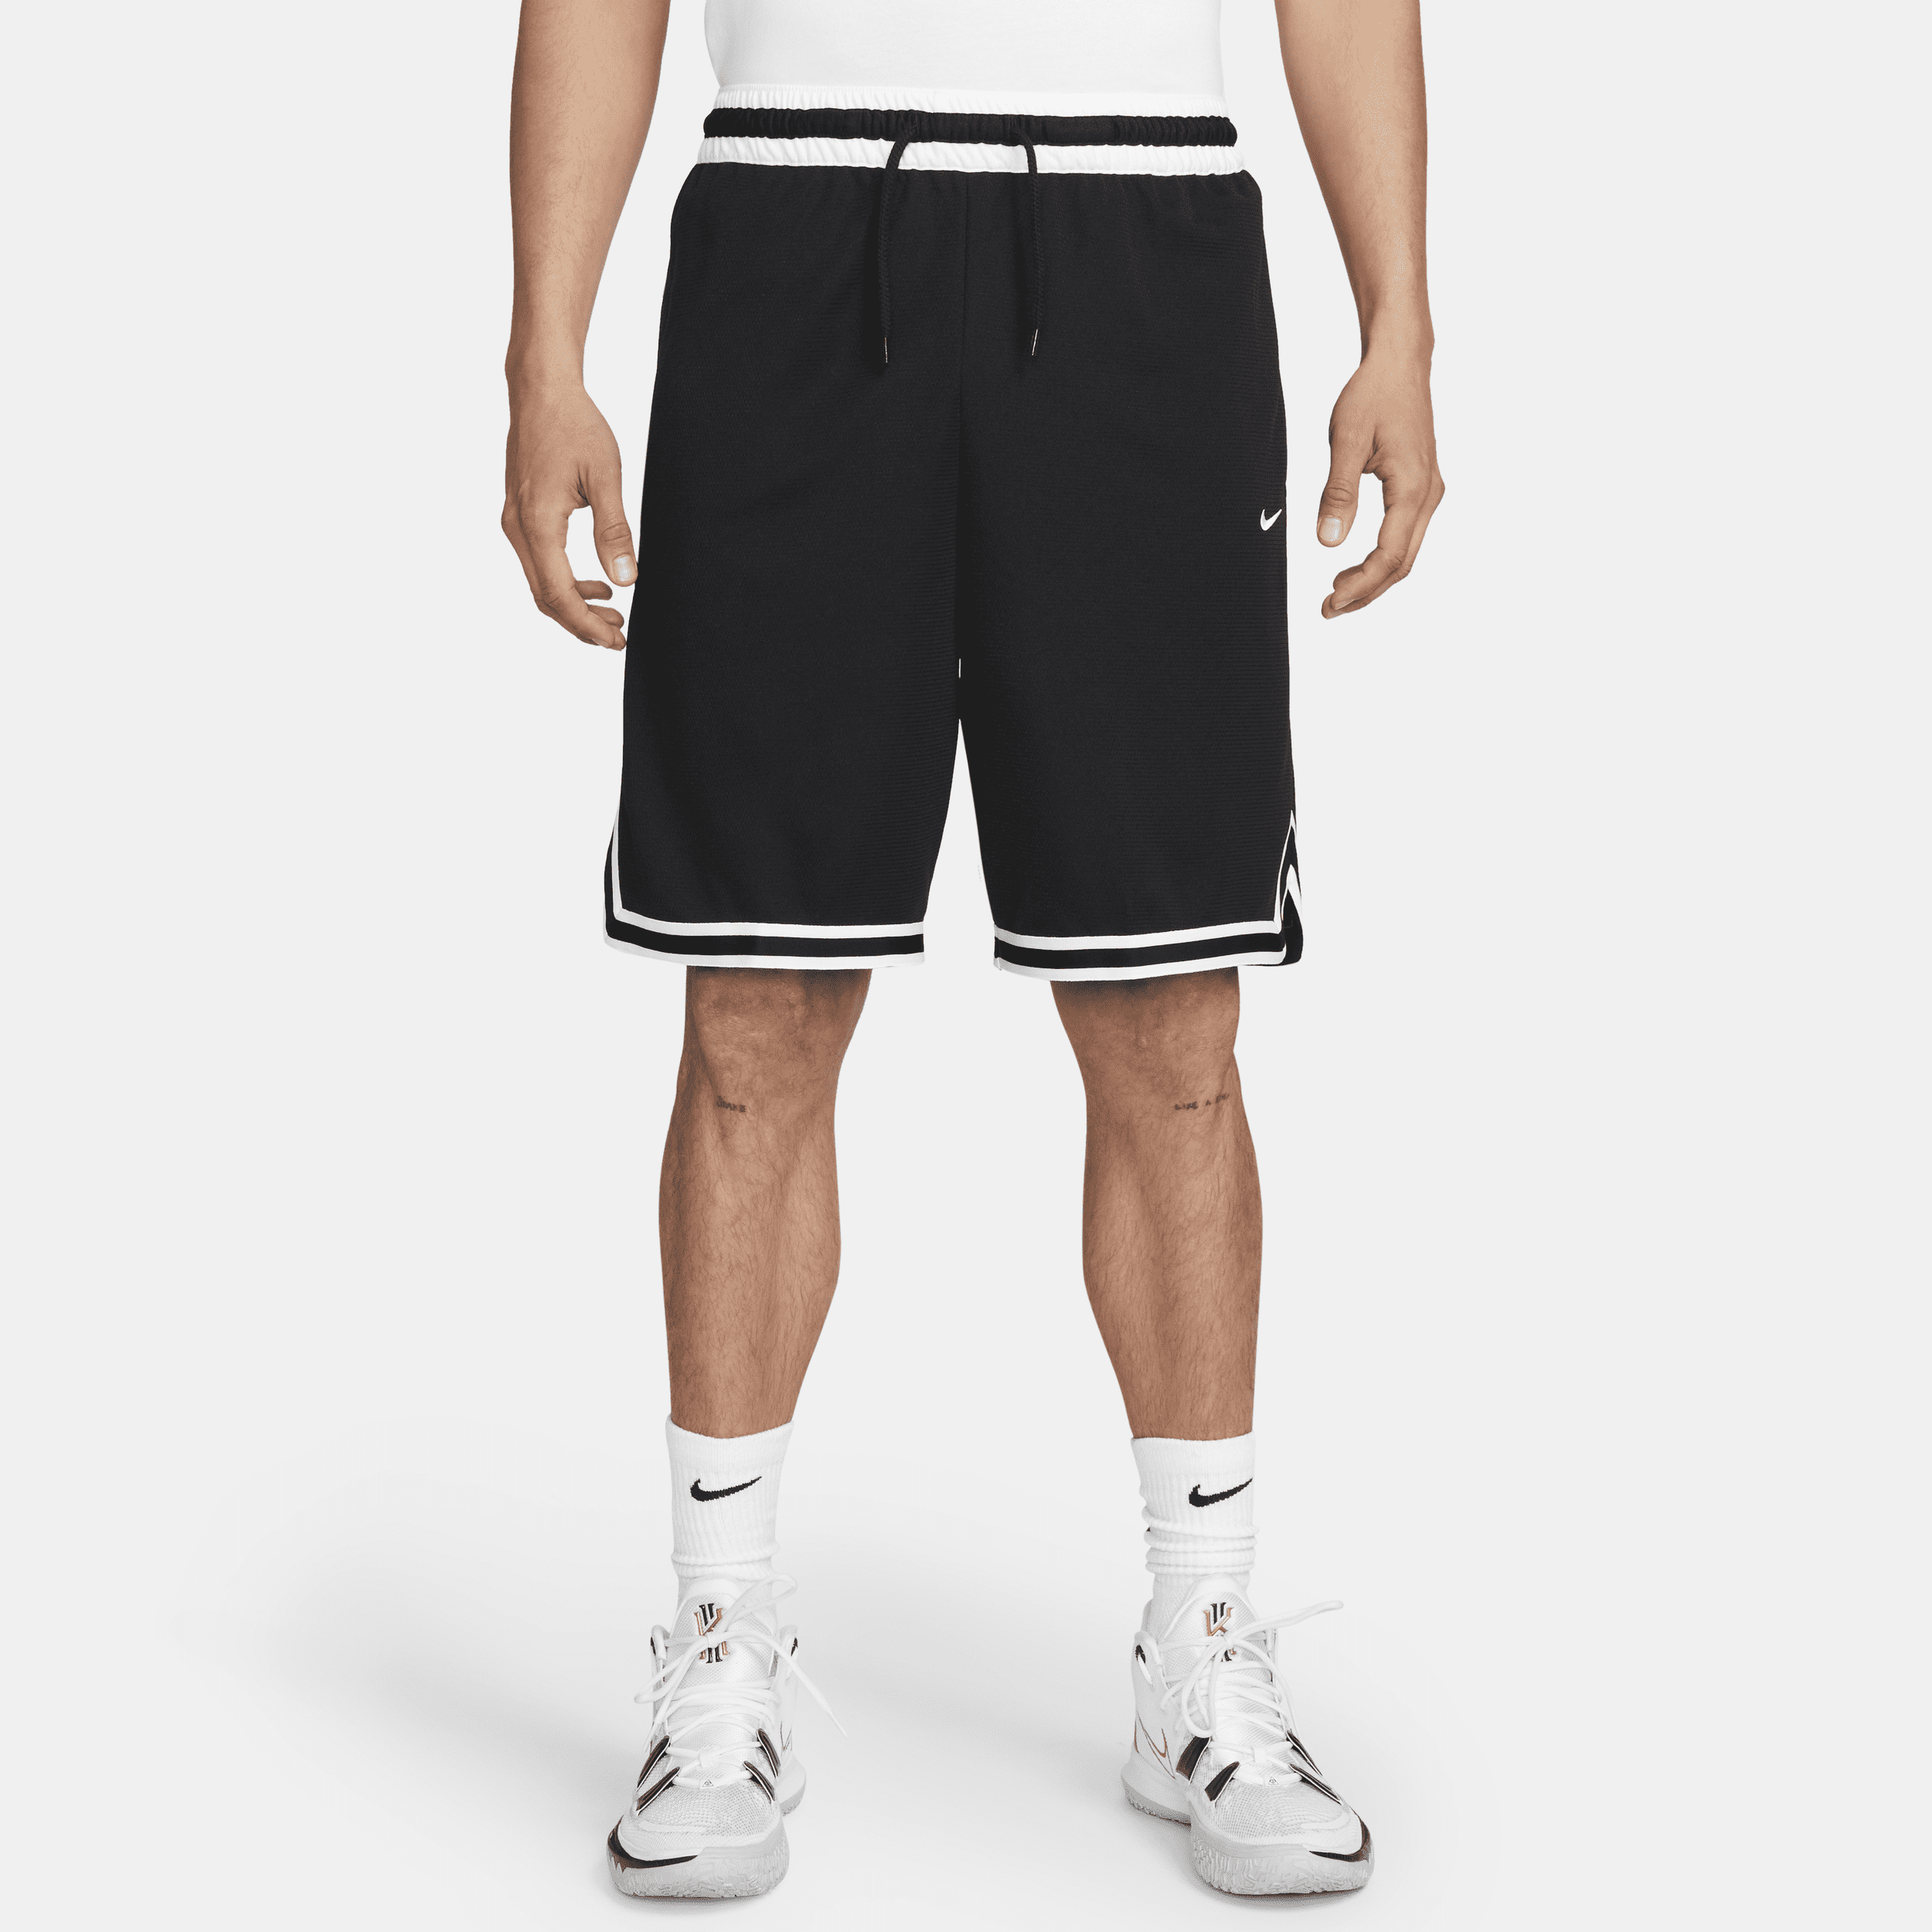 Nike Dri-FIT DNA-basketballshorts (25 cm) til mænd - sort